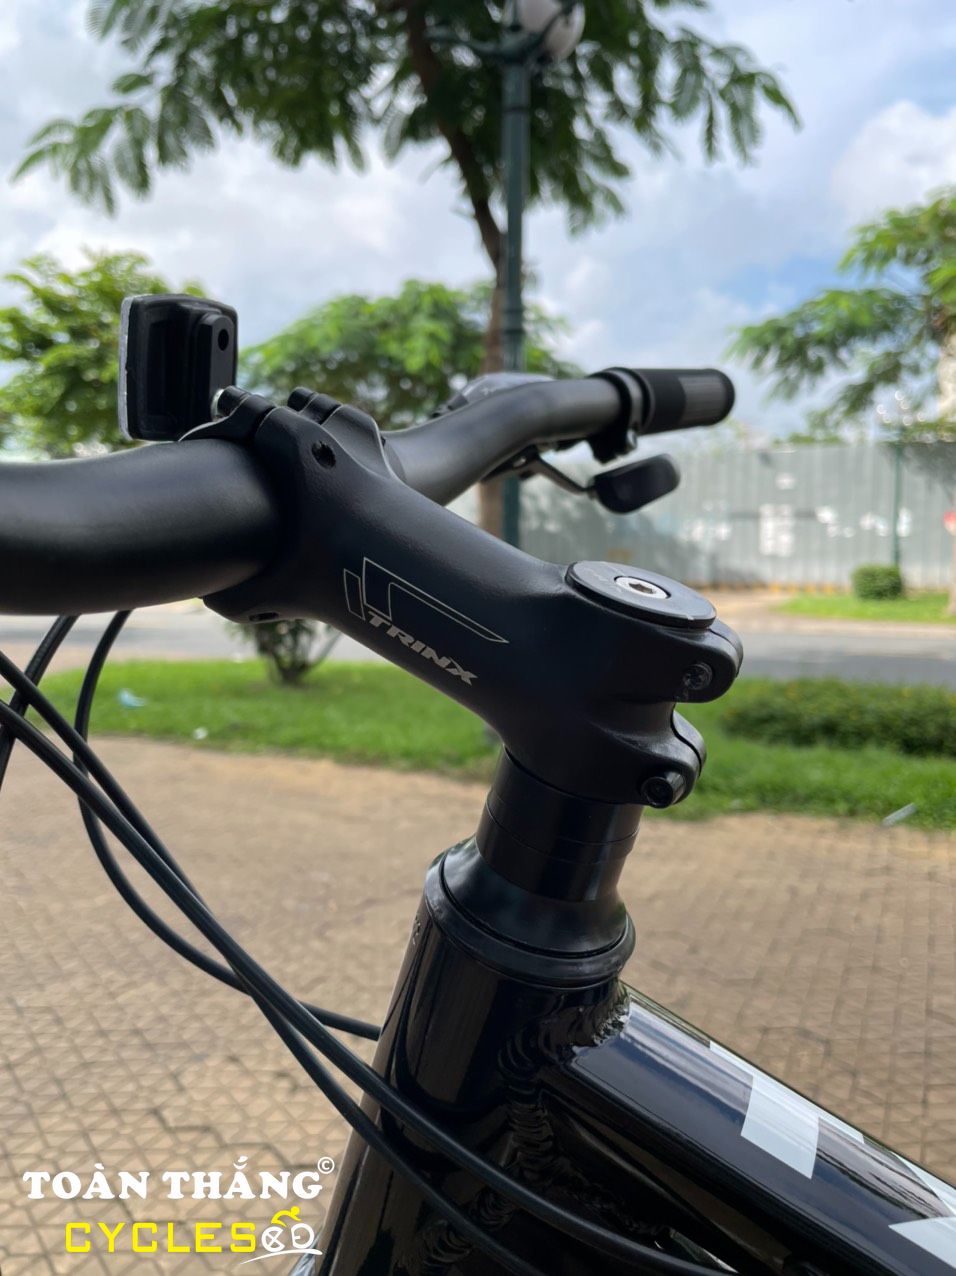 Xe đạp địa hình TrinX TX18 27-5 2020 Đen Xanh Ngọc